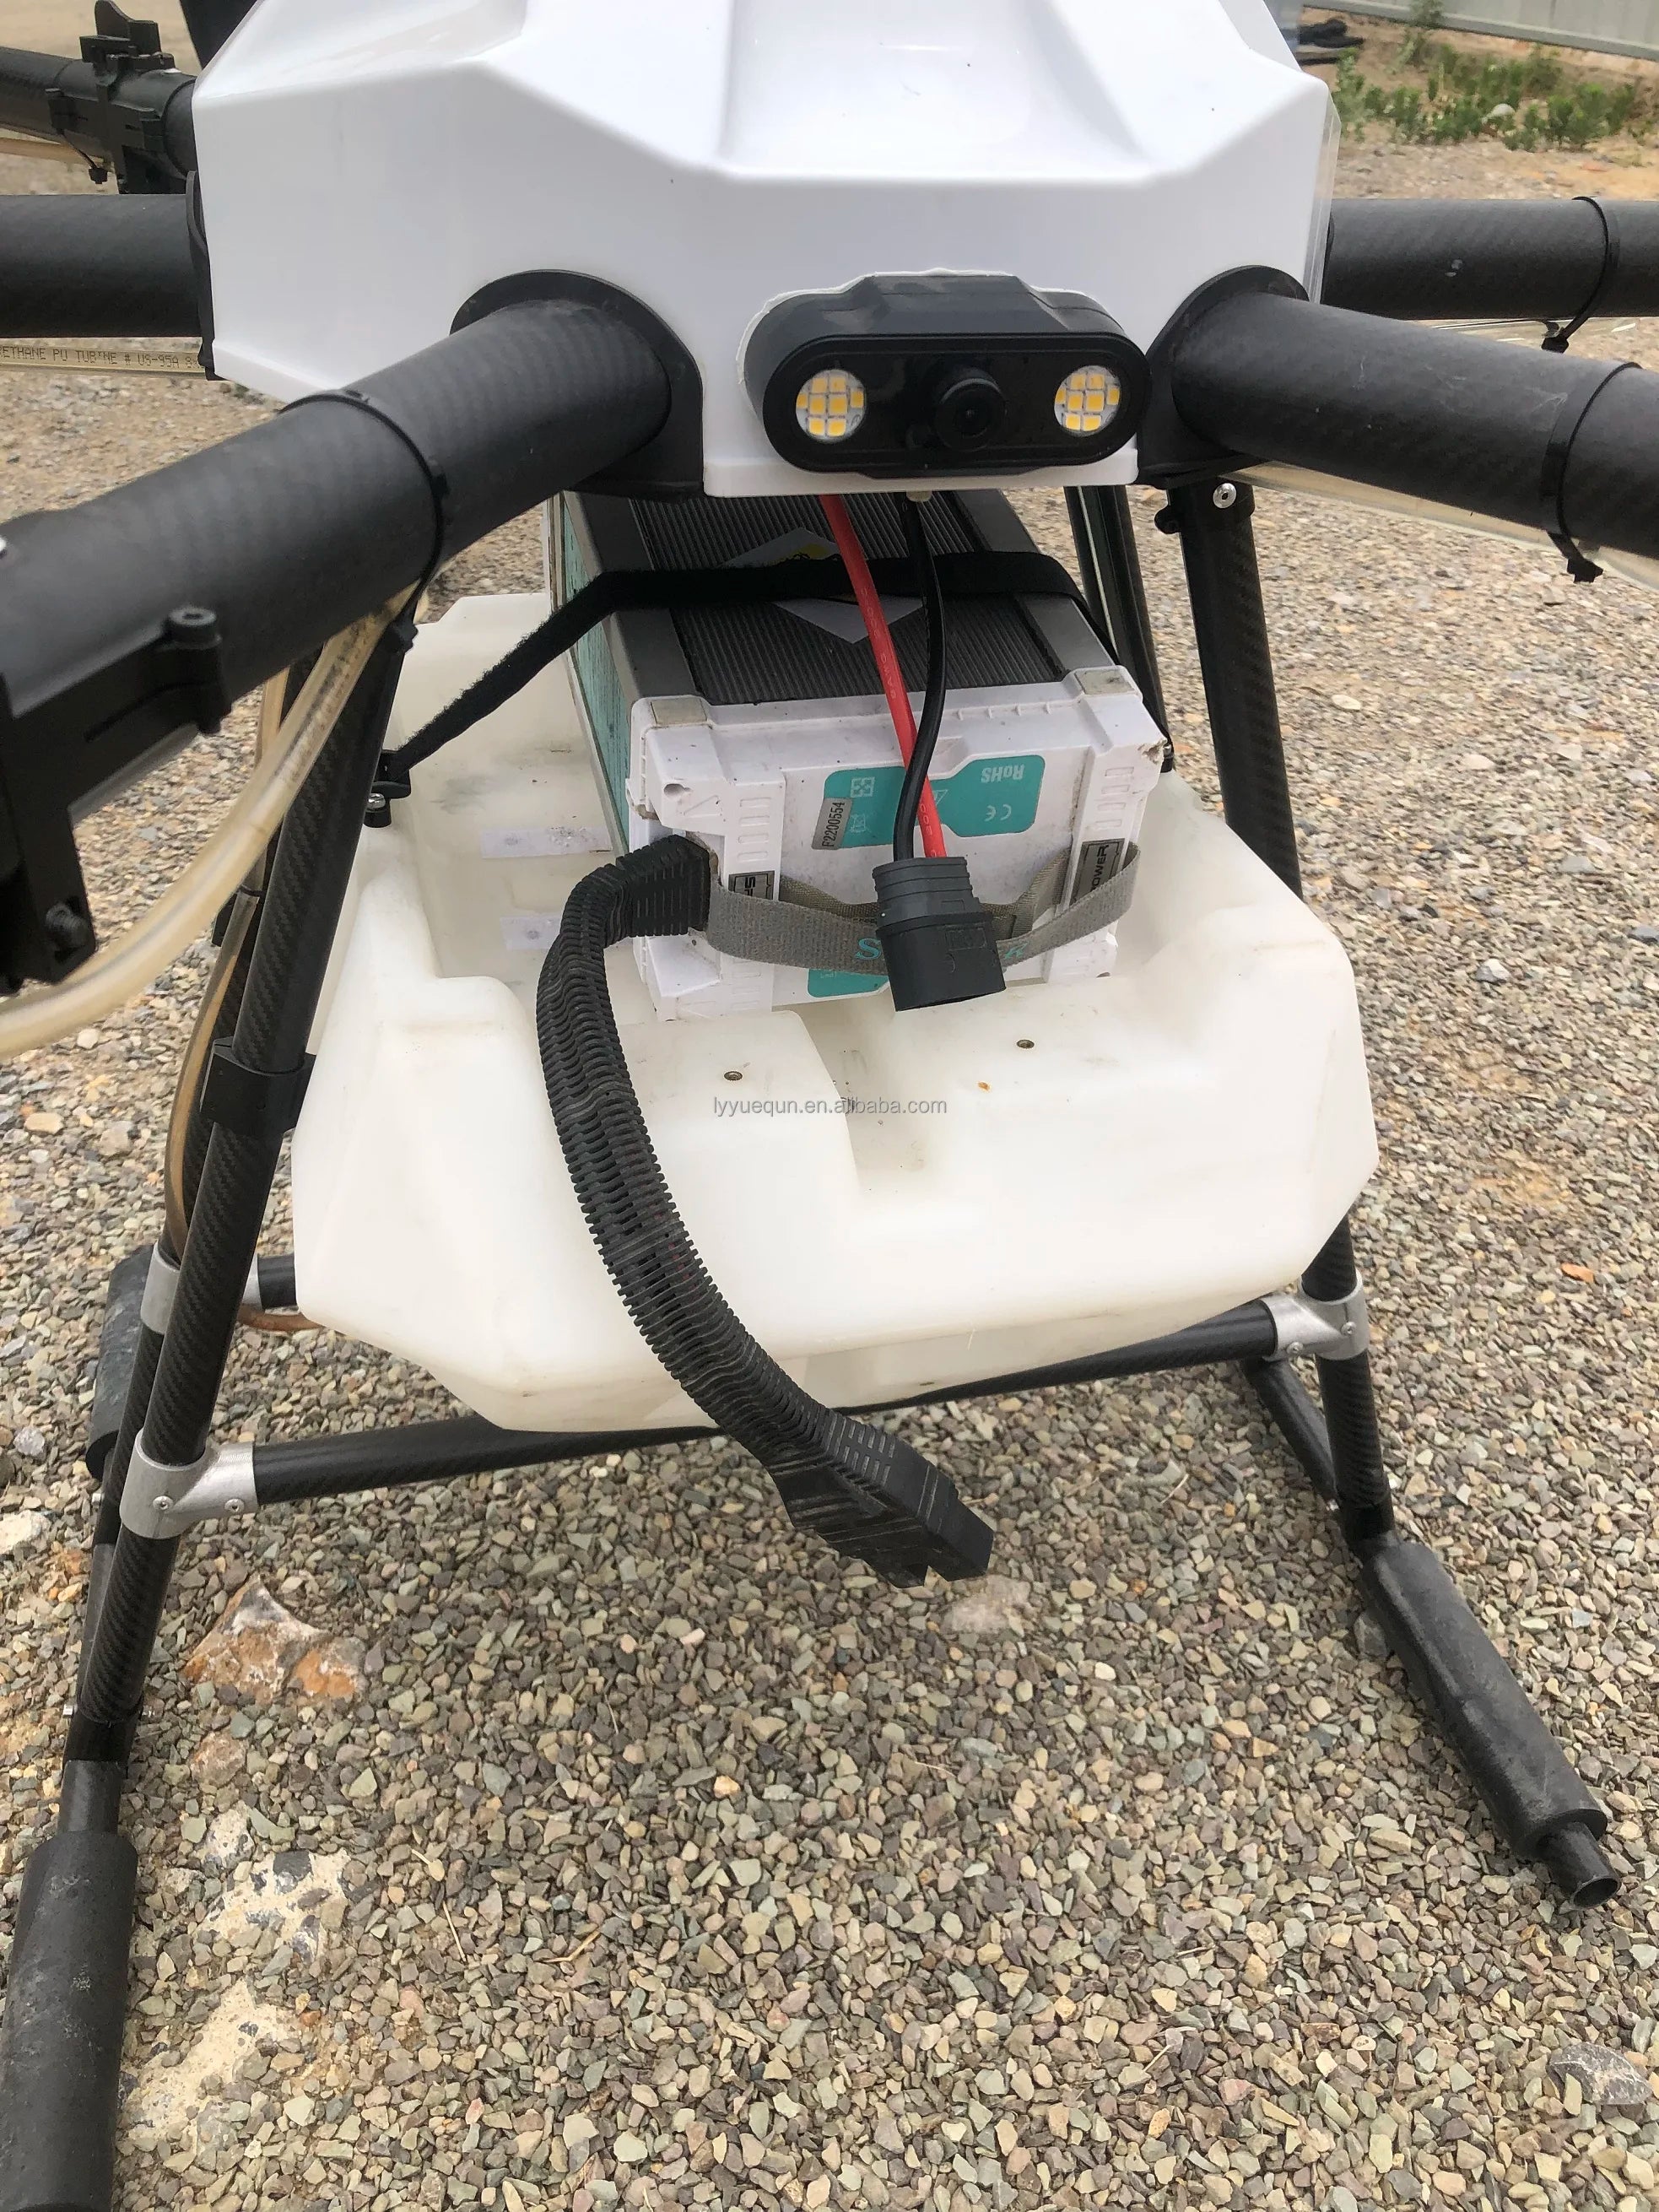 YUEQUN 3WWDZ-30A 30L Agriculture Drone, ETHANE PW TUBTNE ShOB 9) lyyuequ